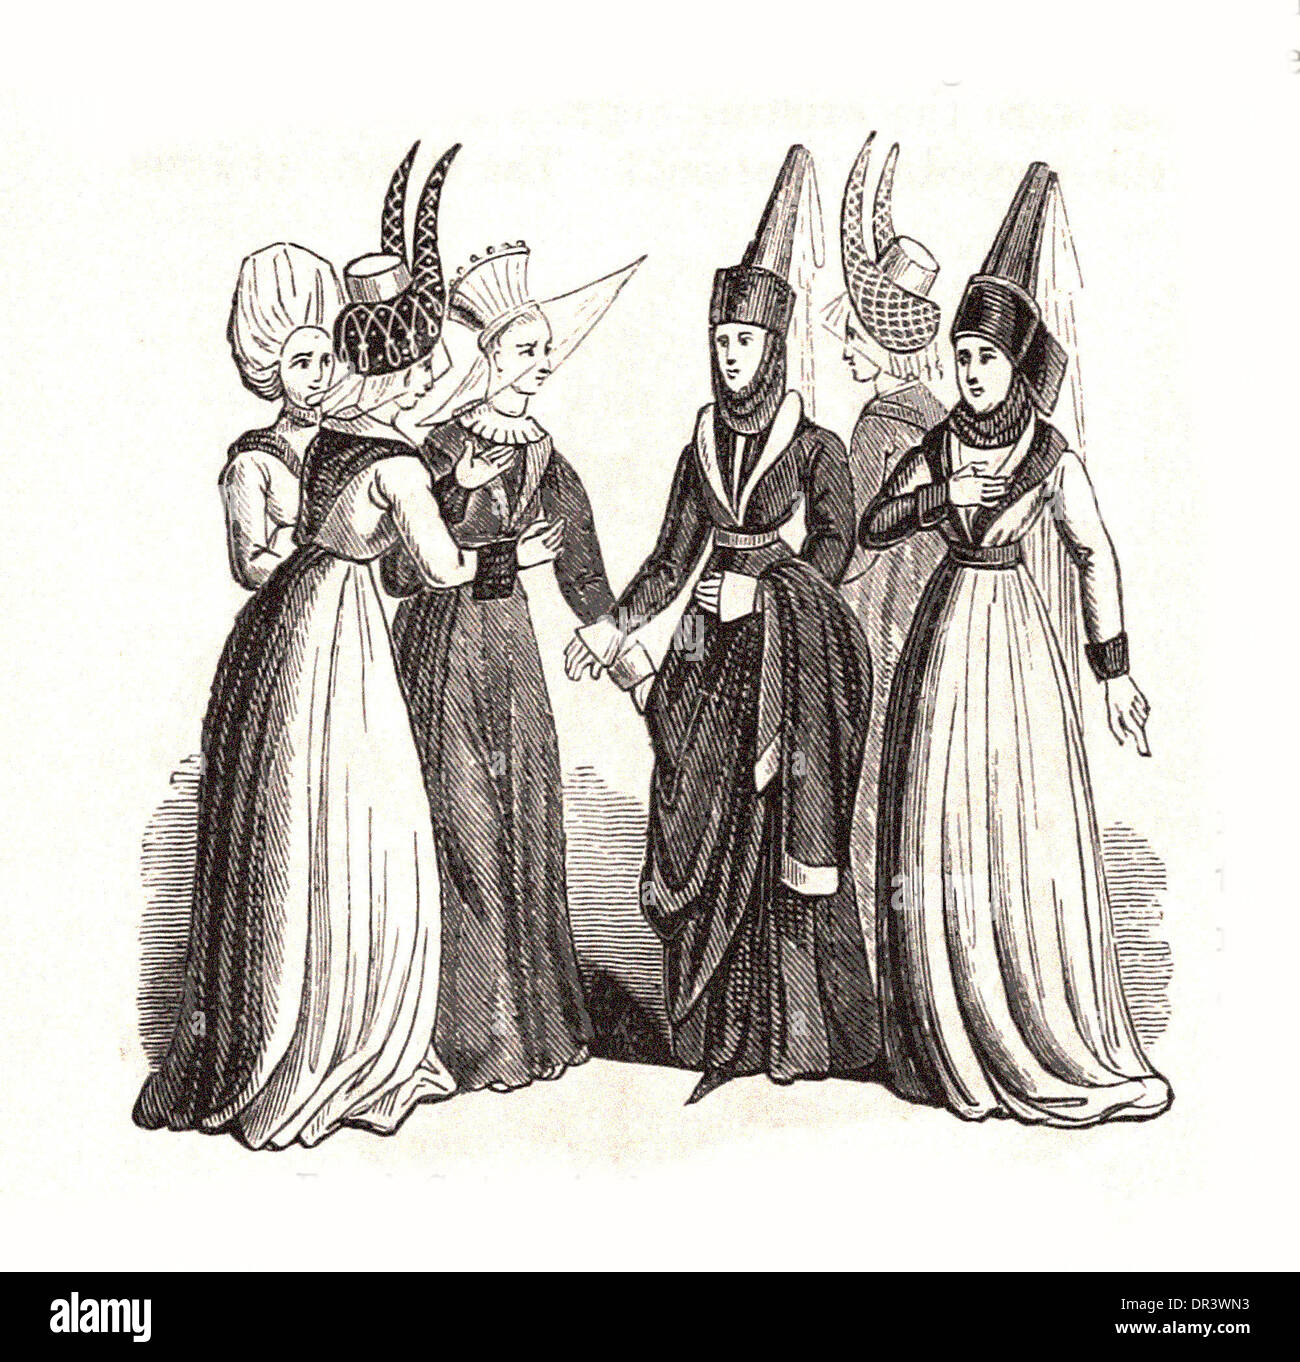 Costume féminin au temps d'Édouard IV - Britsh gravure Banque D'Images